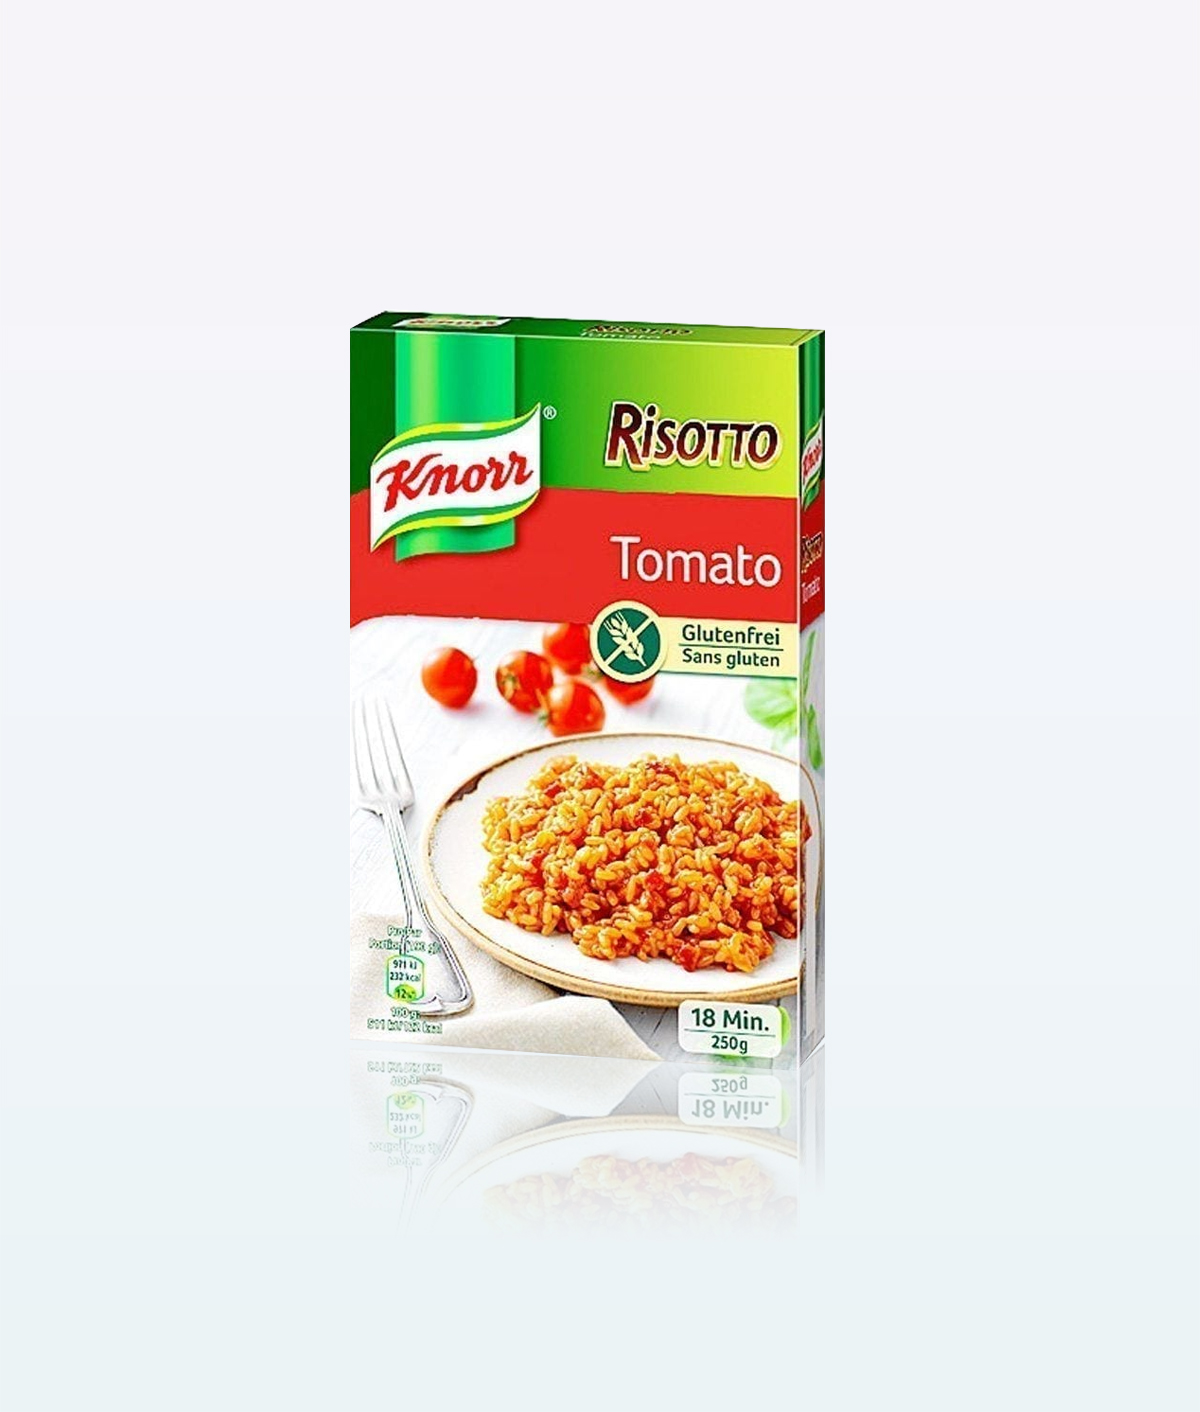 Knorr-Risotto-tomato